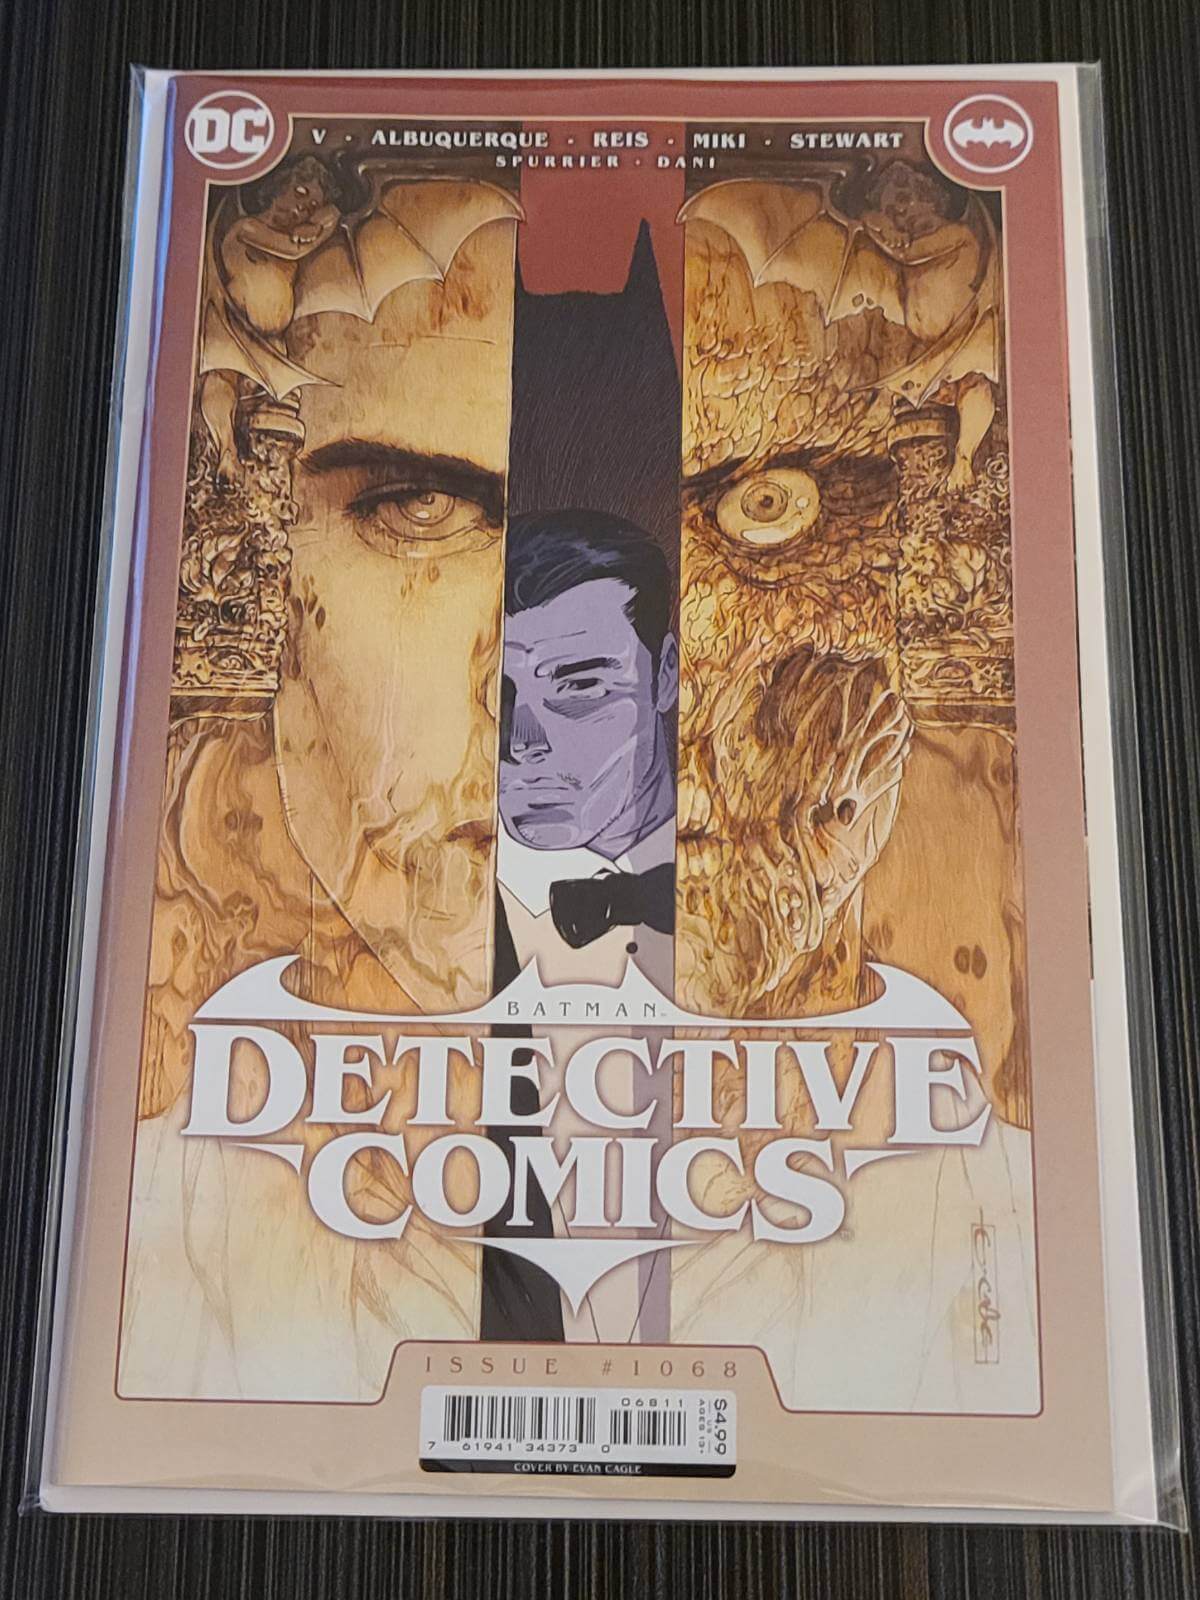 Detective Comics #1068 Cover A